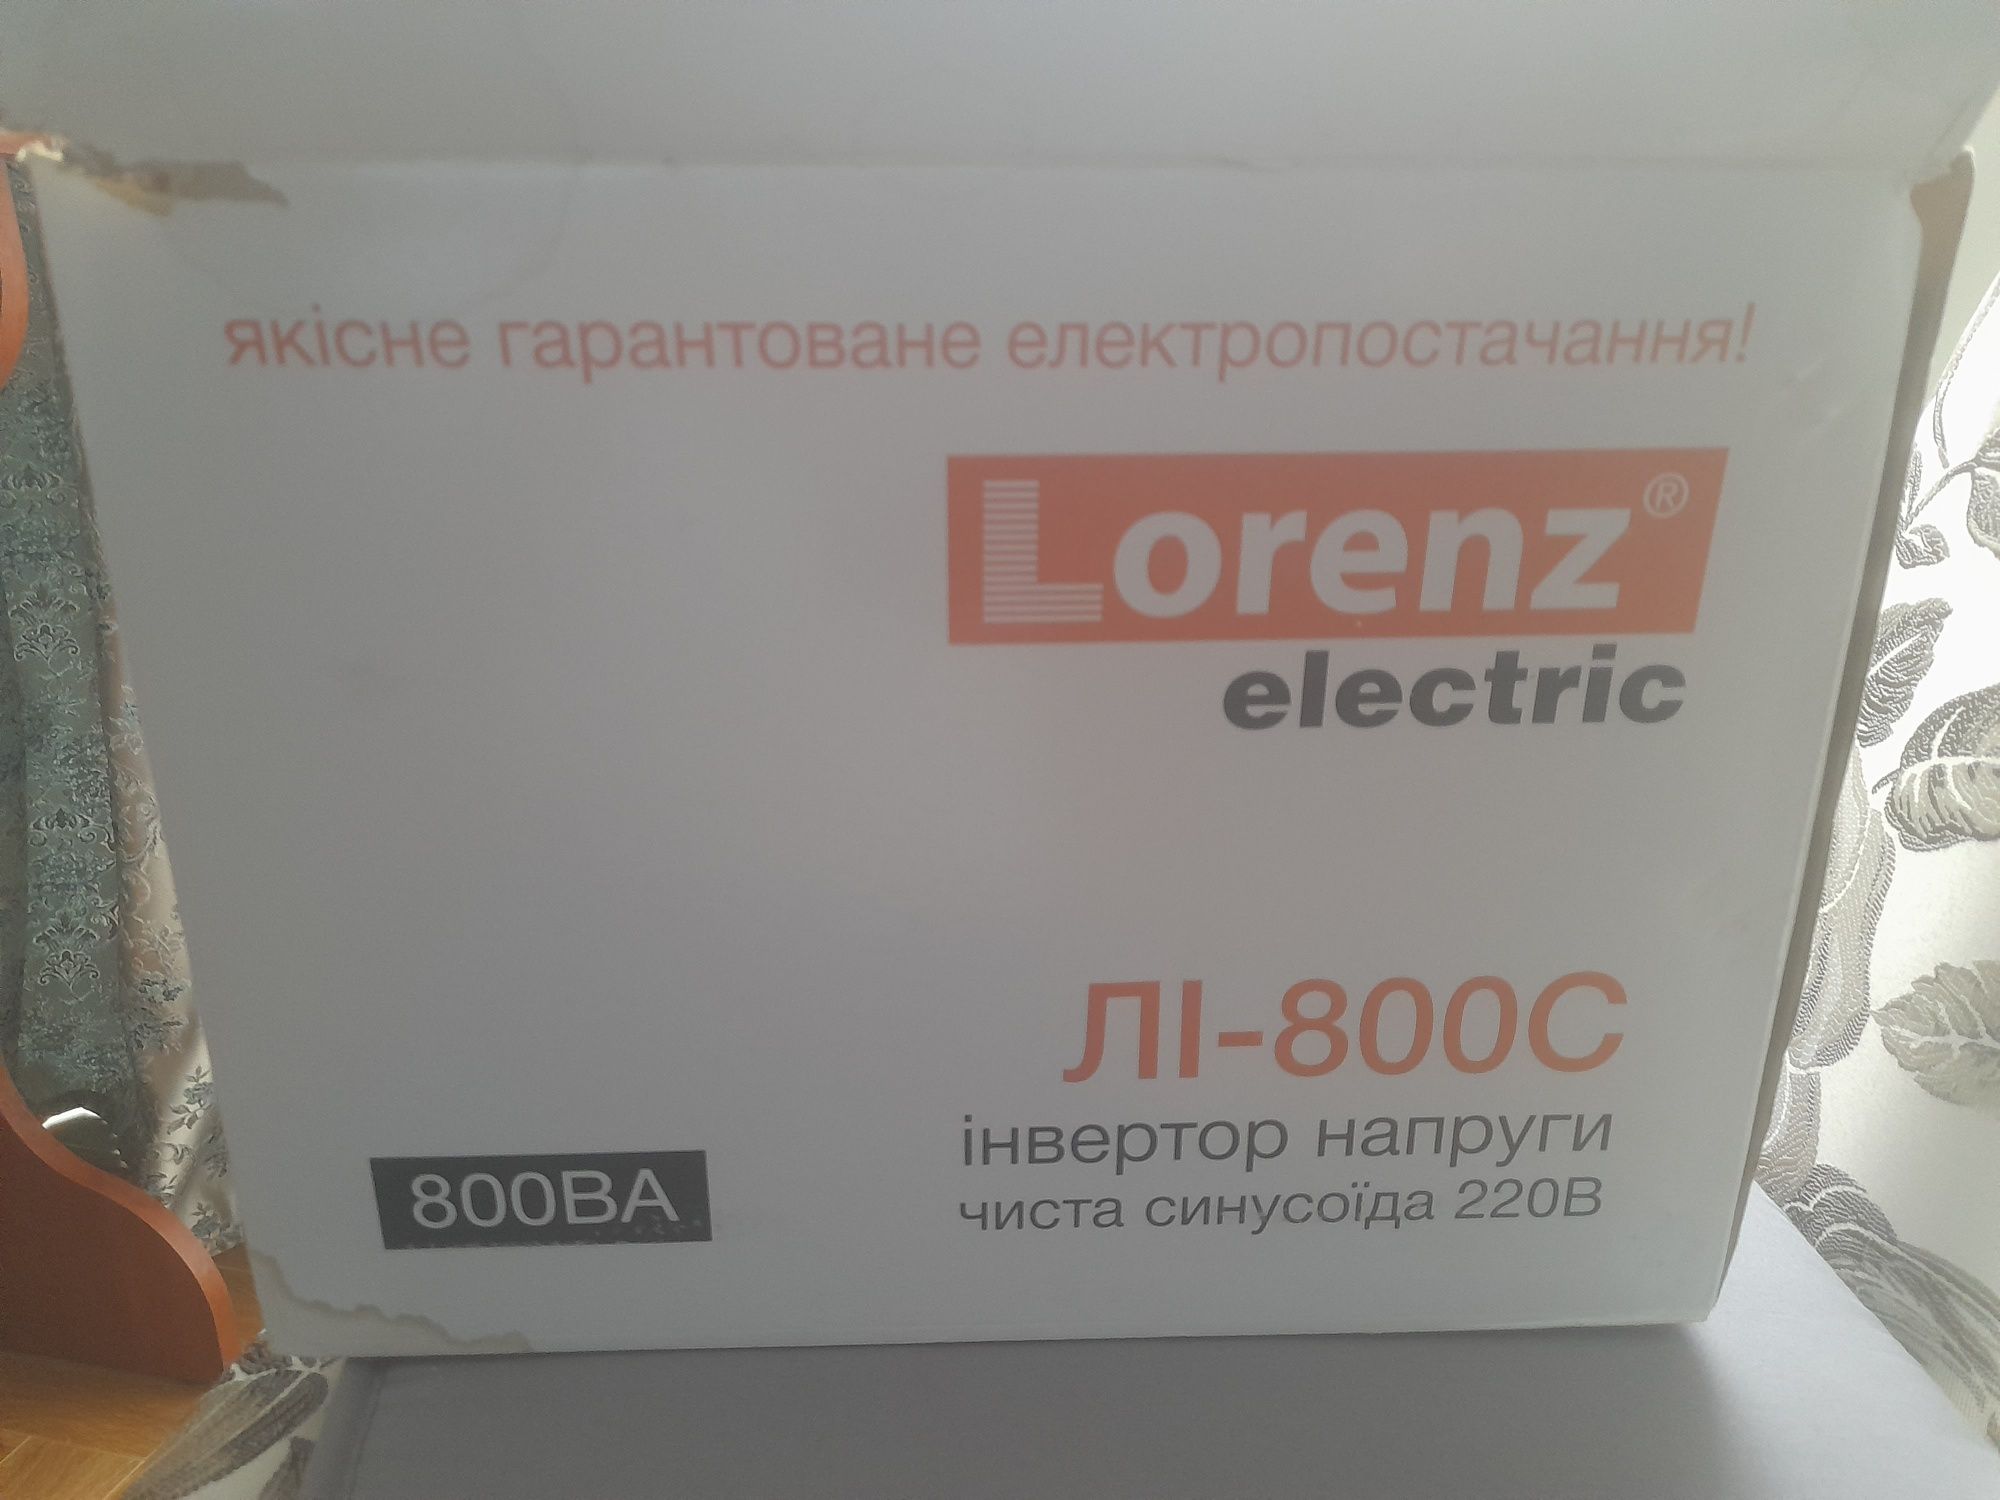 Продам инвертор напряжения Lorenz electric ЛI-800C /Новый/